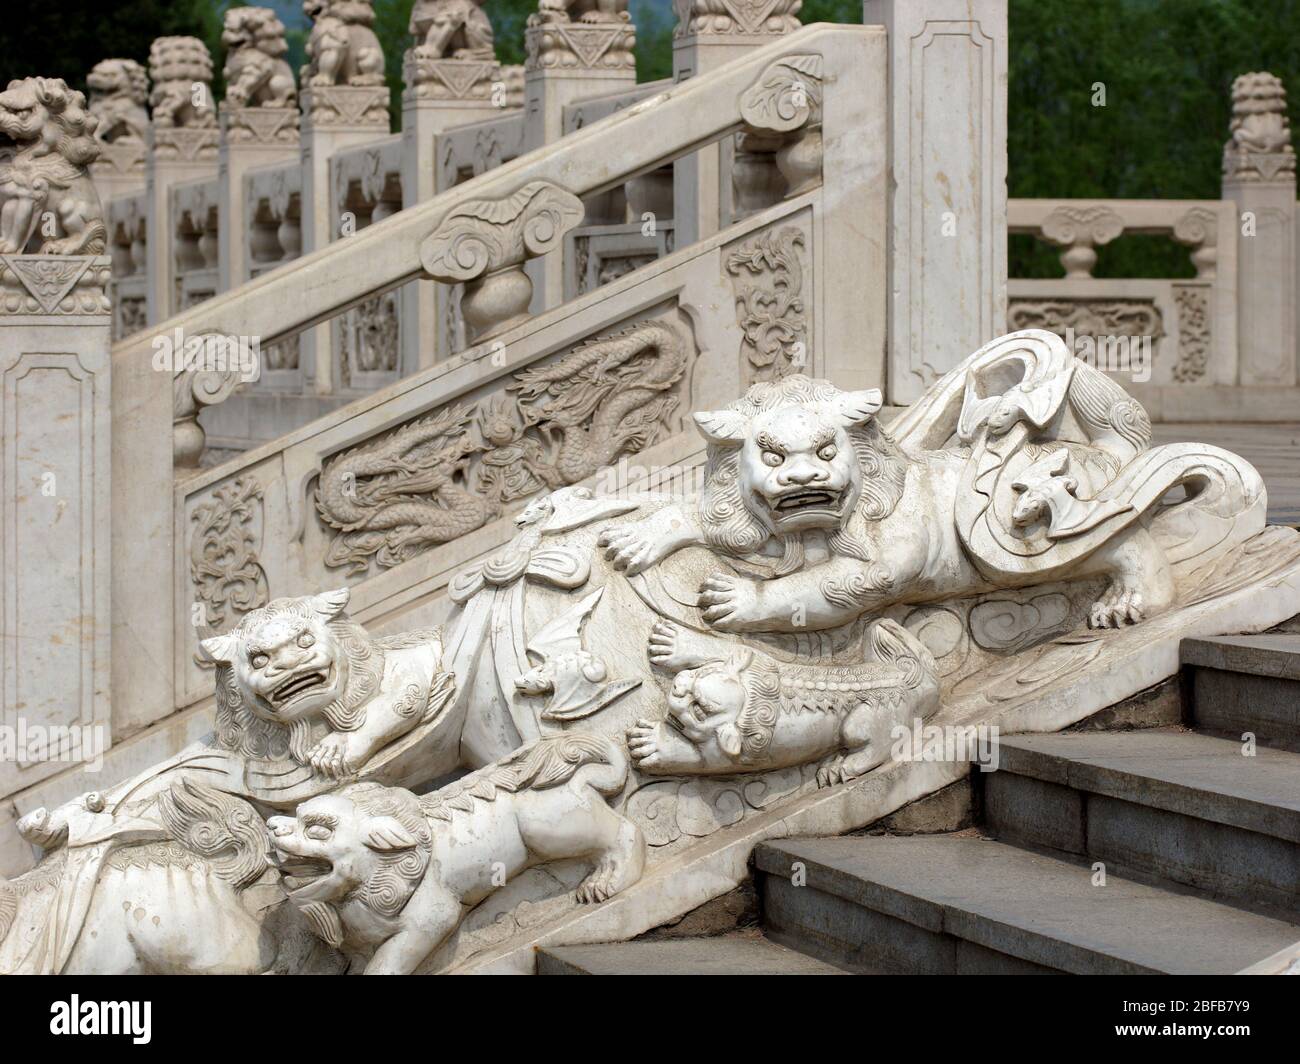 Les lions et les chauves-souris chinois sont sculptés en pierre. Jade Buddha Park, Anshan, province de Liaoning, Chine, Asie. Banque D'Images